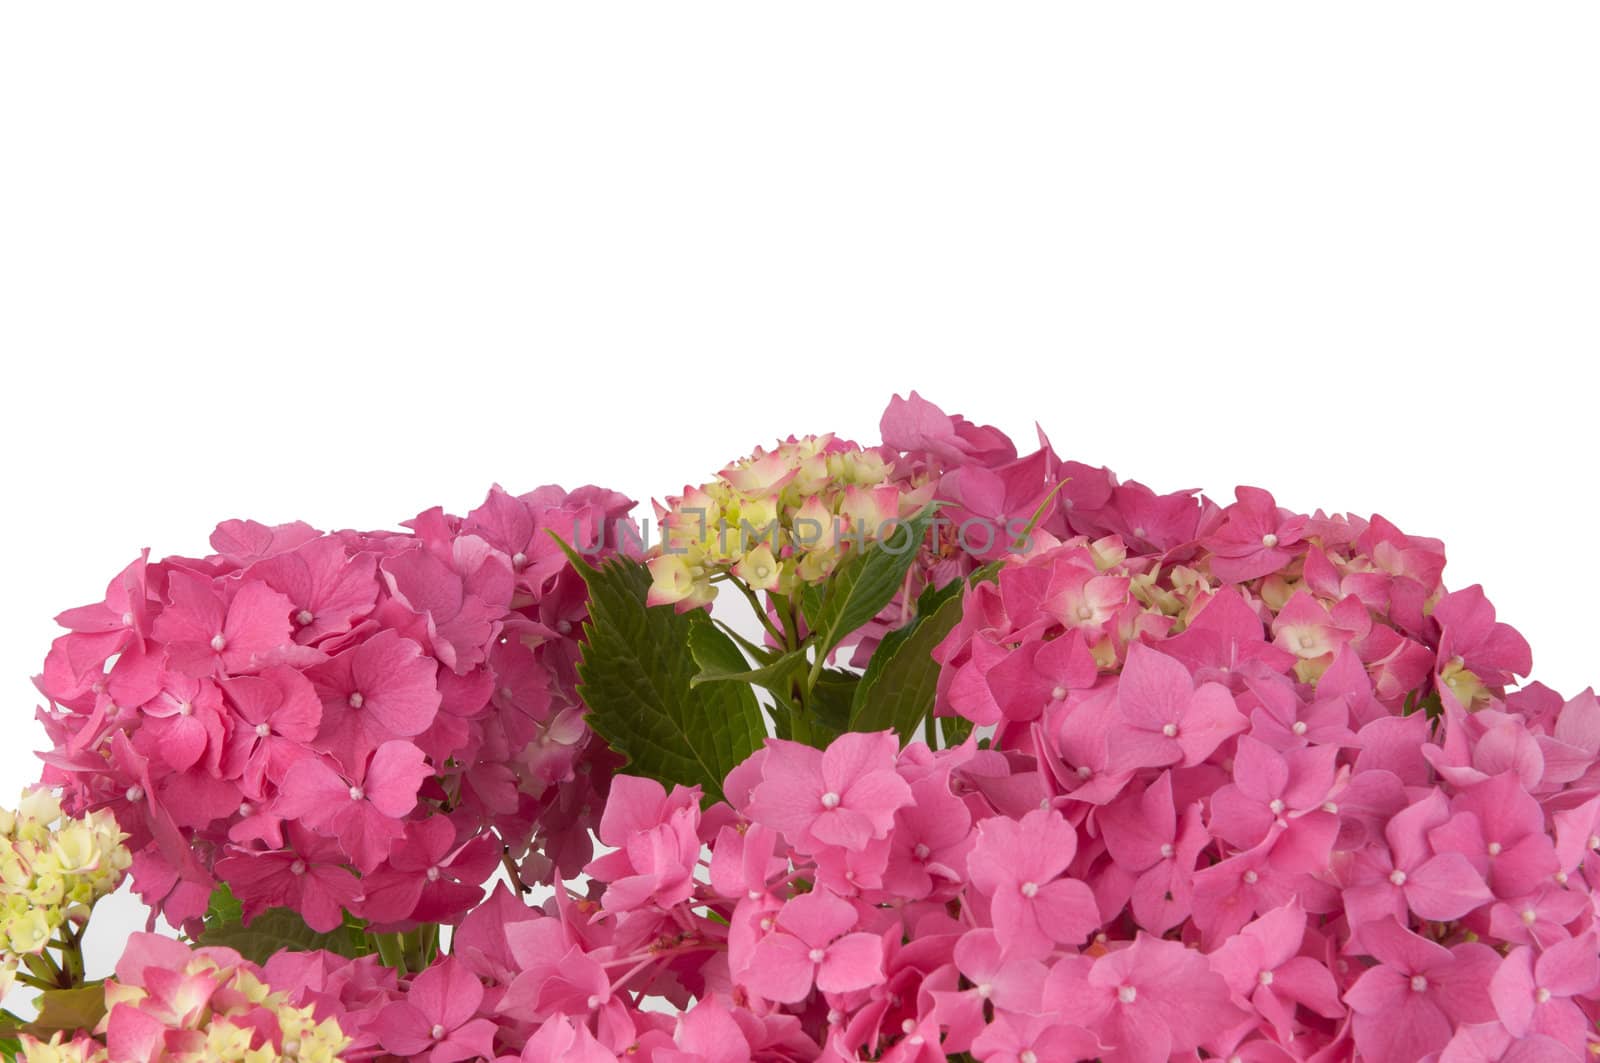 hydrangea flowers (zoom)